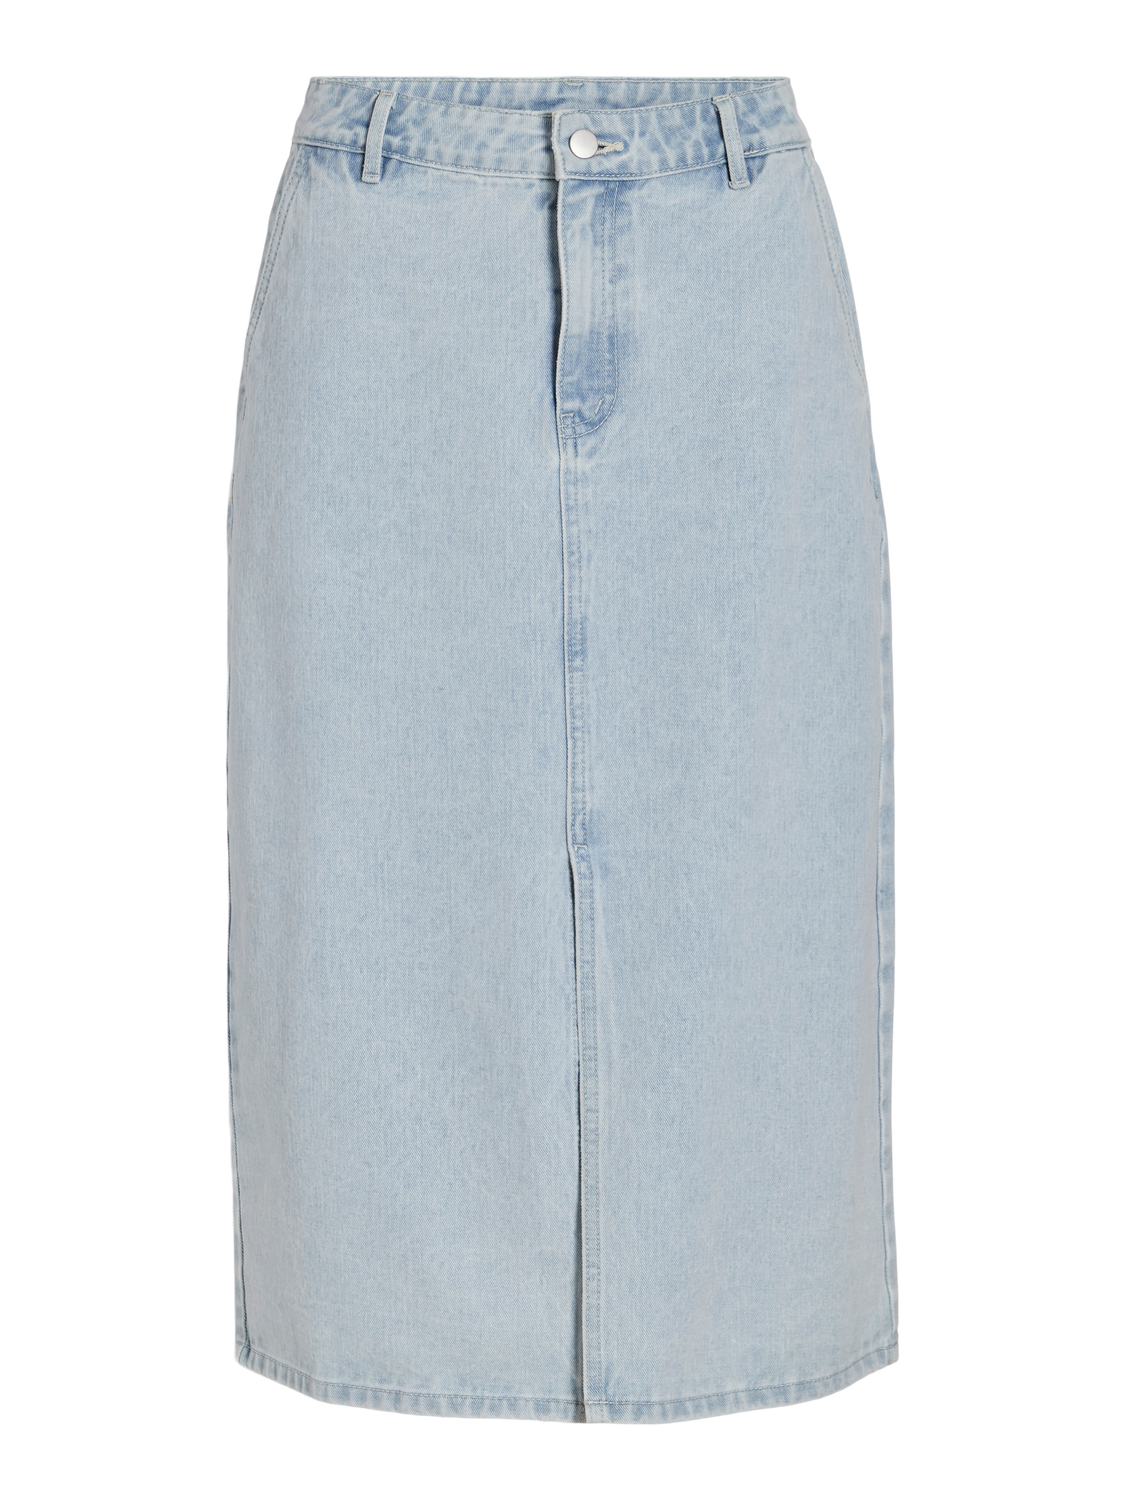 VIKIRA Skirt - Light Blue Bleached Denim